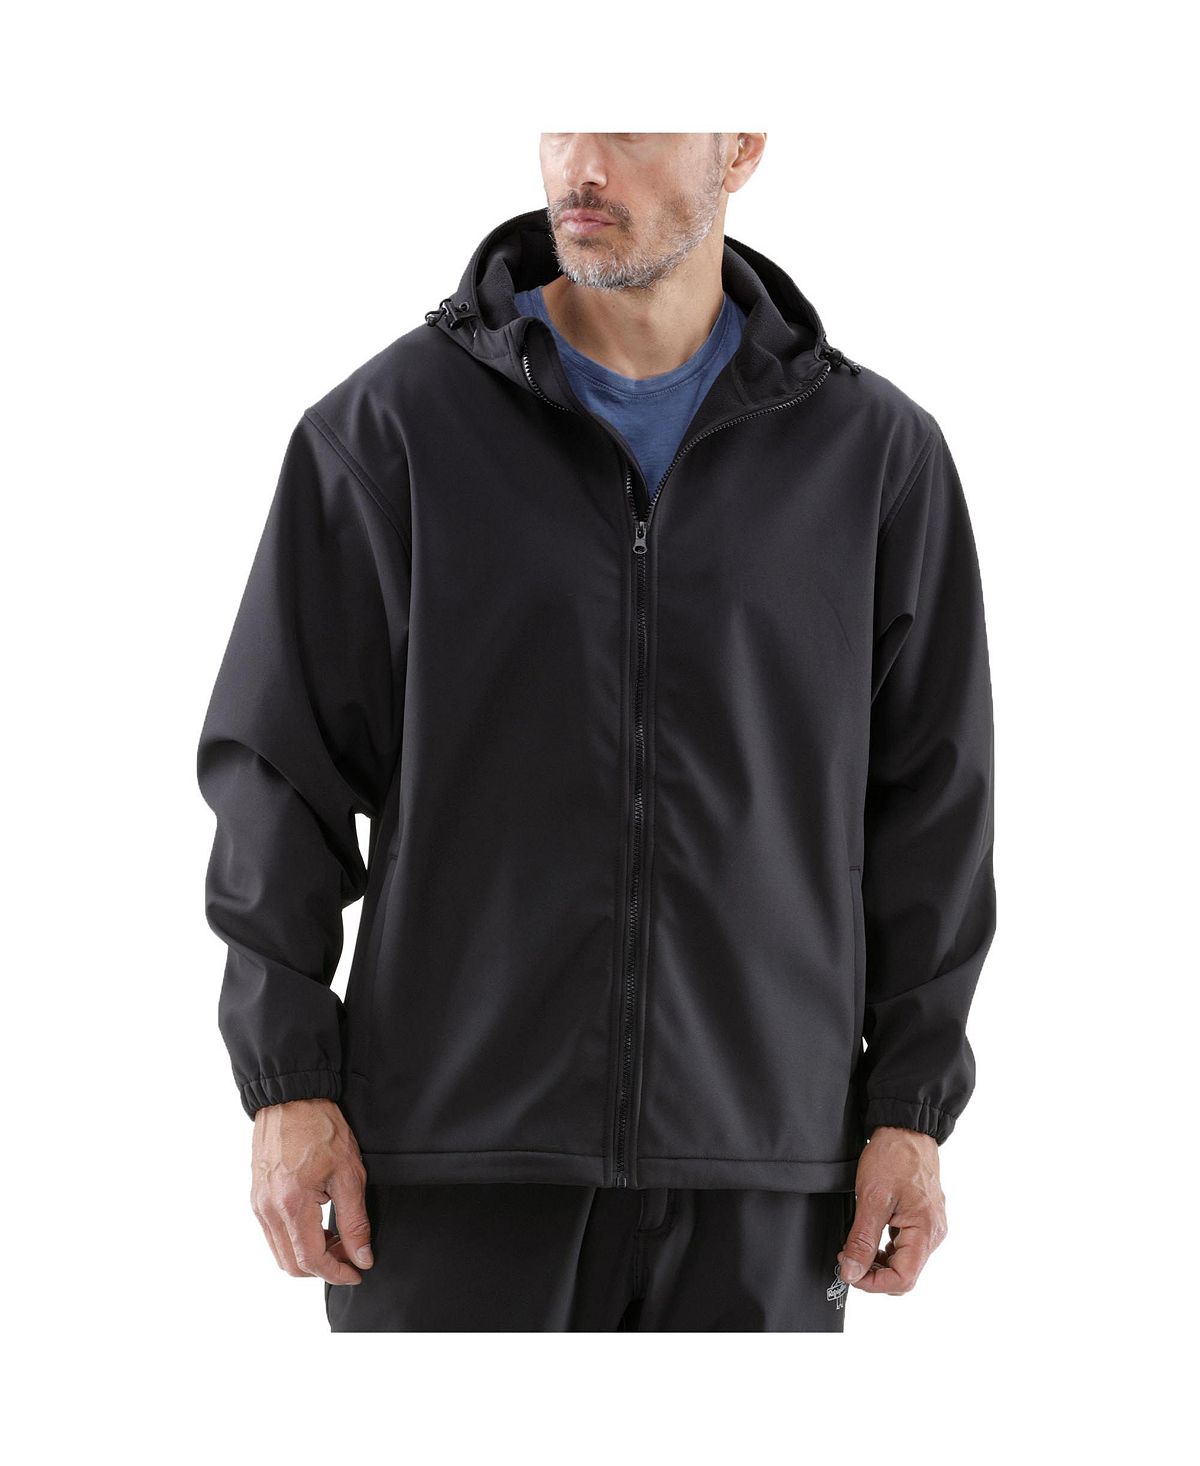 Мужская теплая водонепроницаемая легкая куртка из софтшелла с капюшоном RefrigiWear